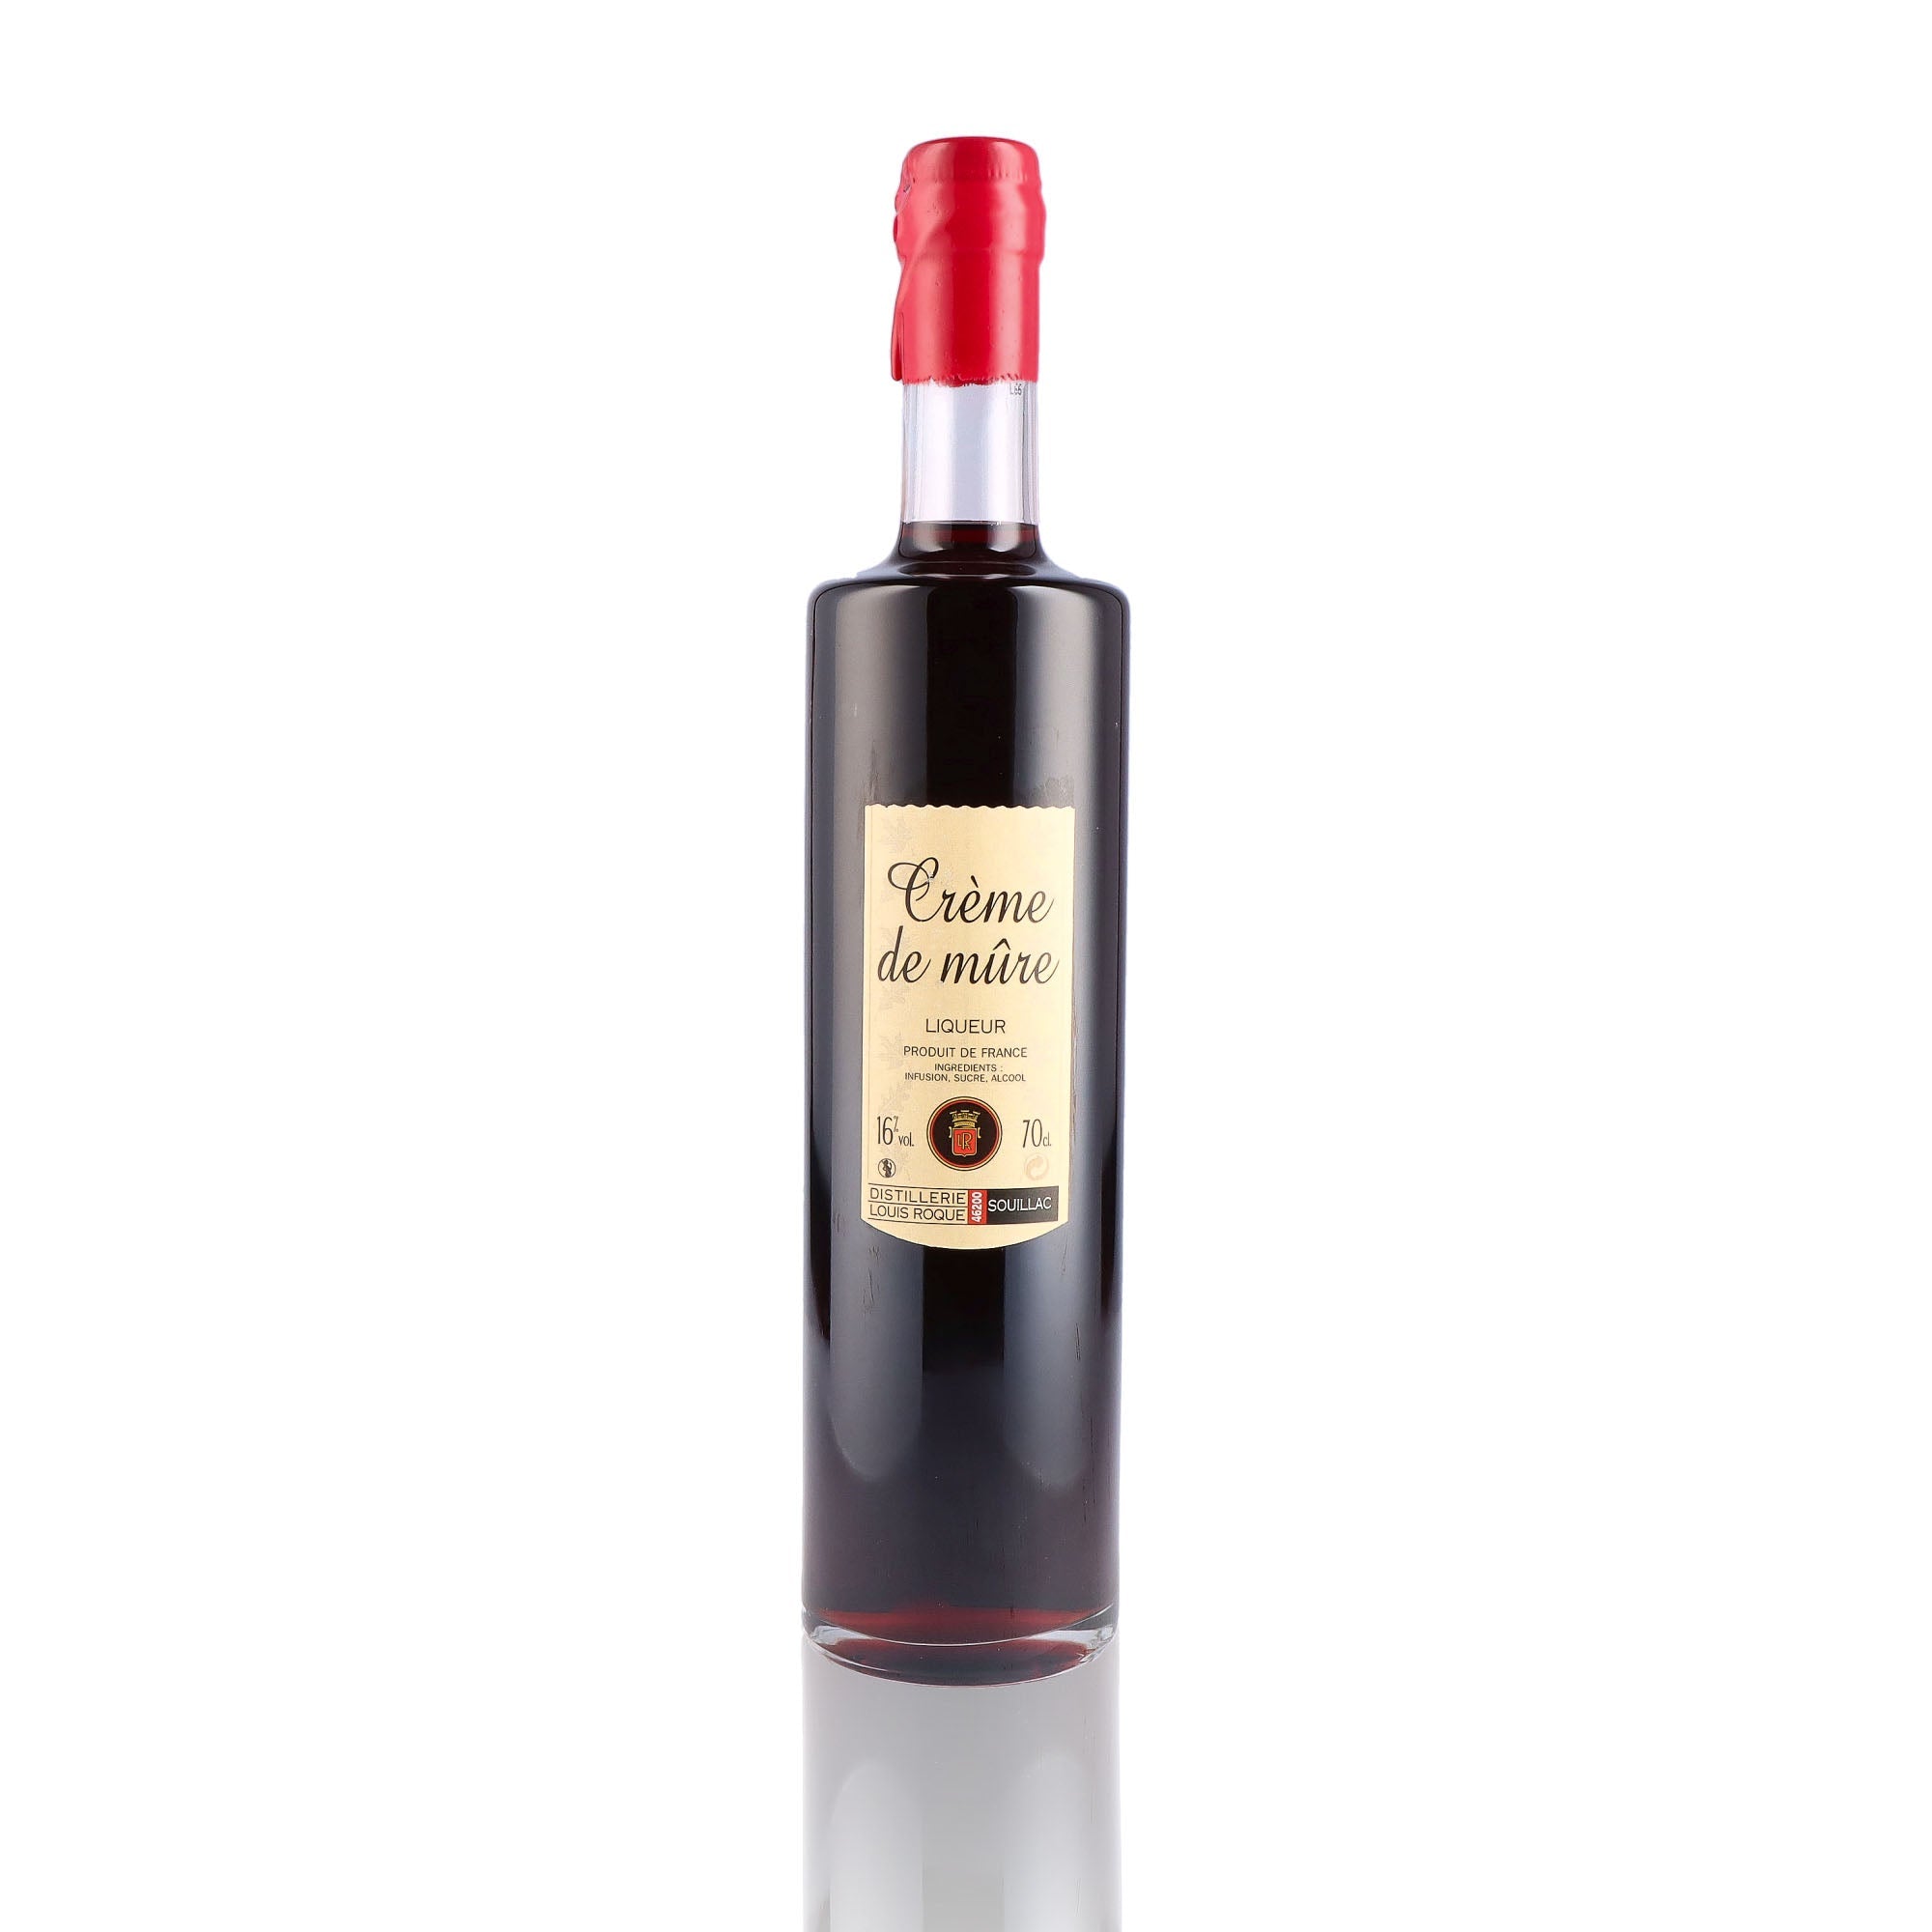 Une bouteille de Liqueur, de la marque Louis Roque, nommée Crème de Framboise.